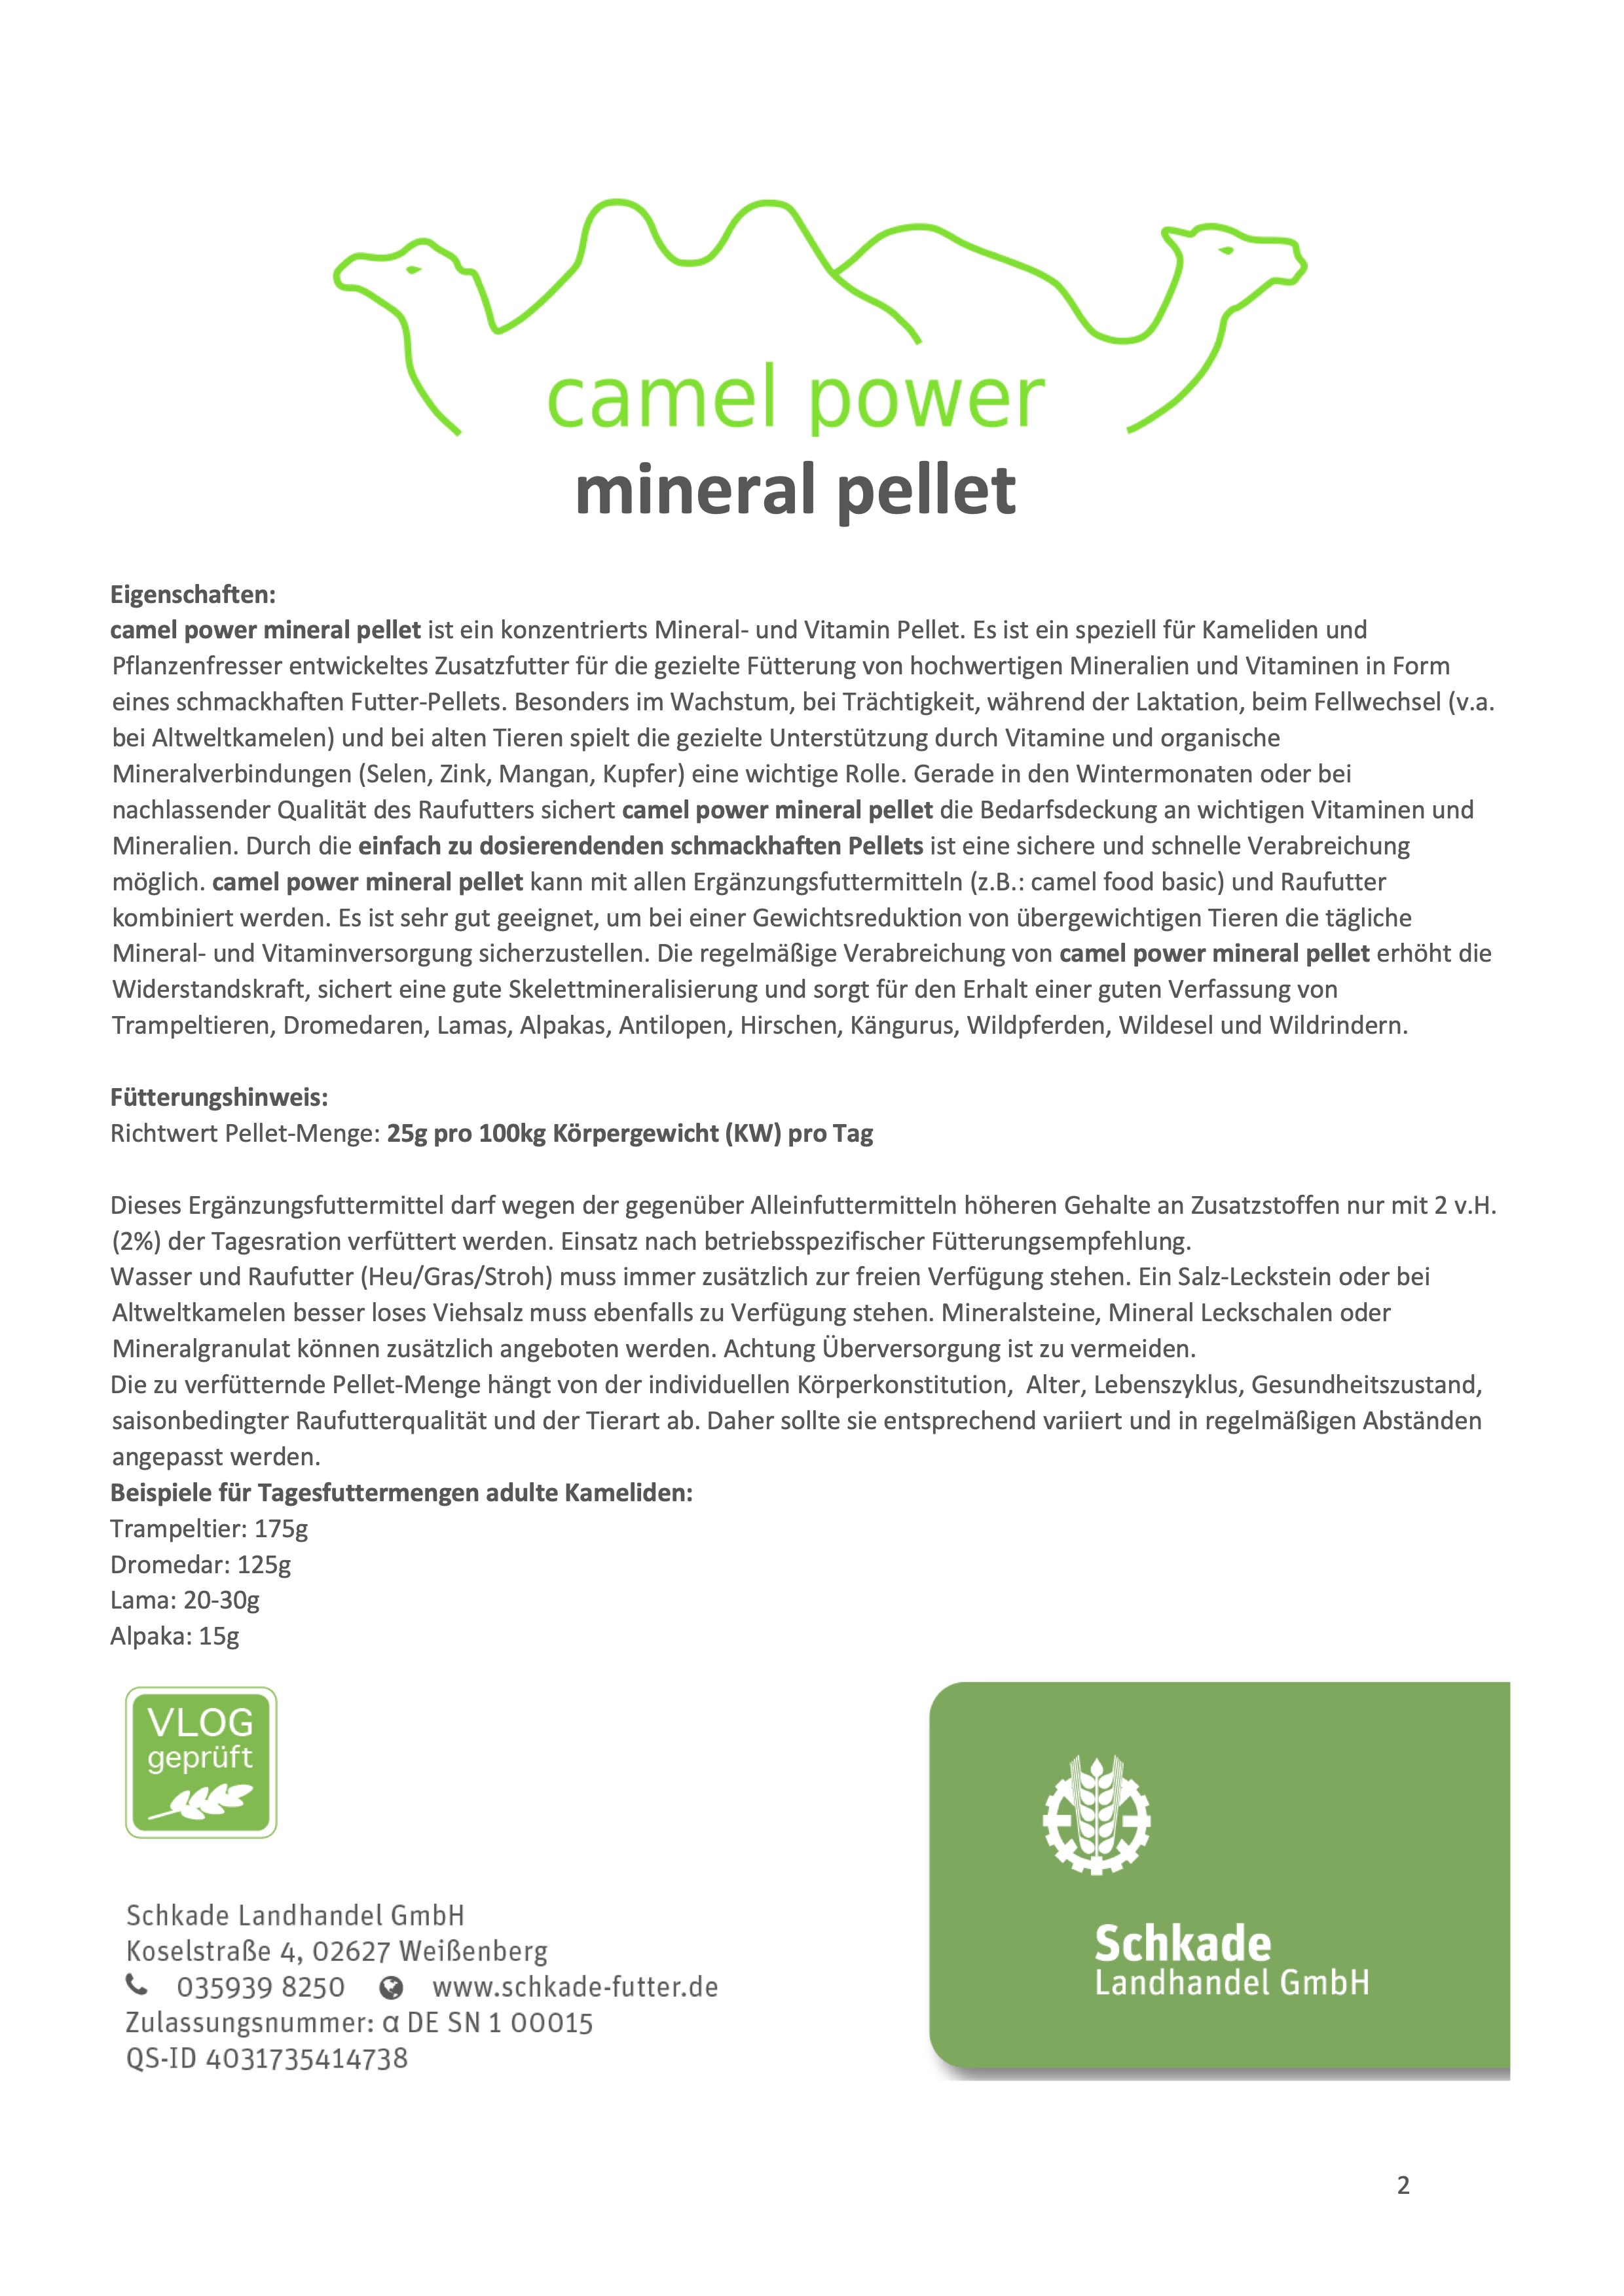 camel power - Mineral Pellet